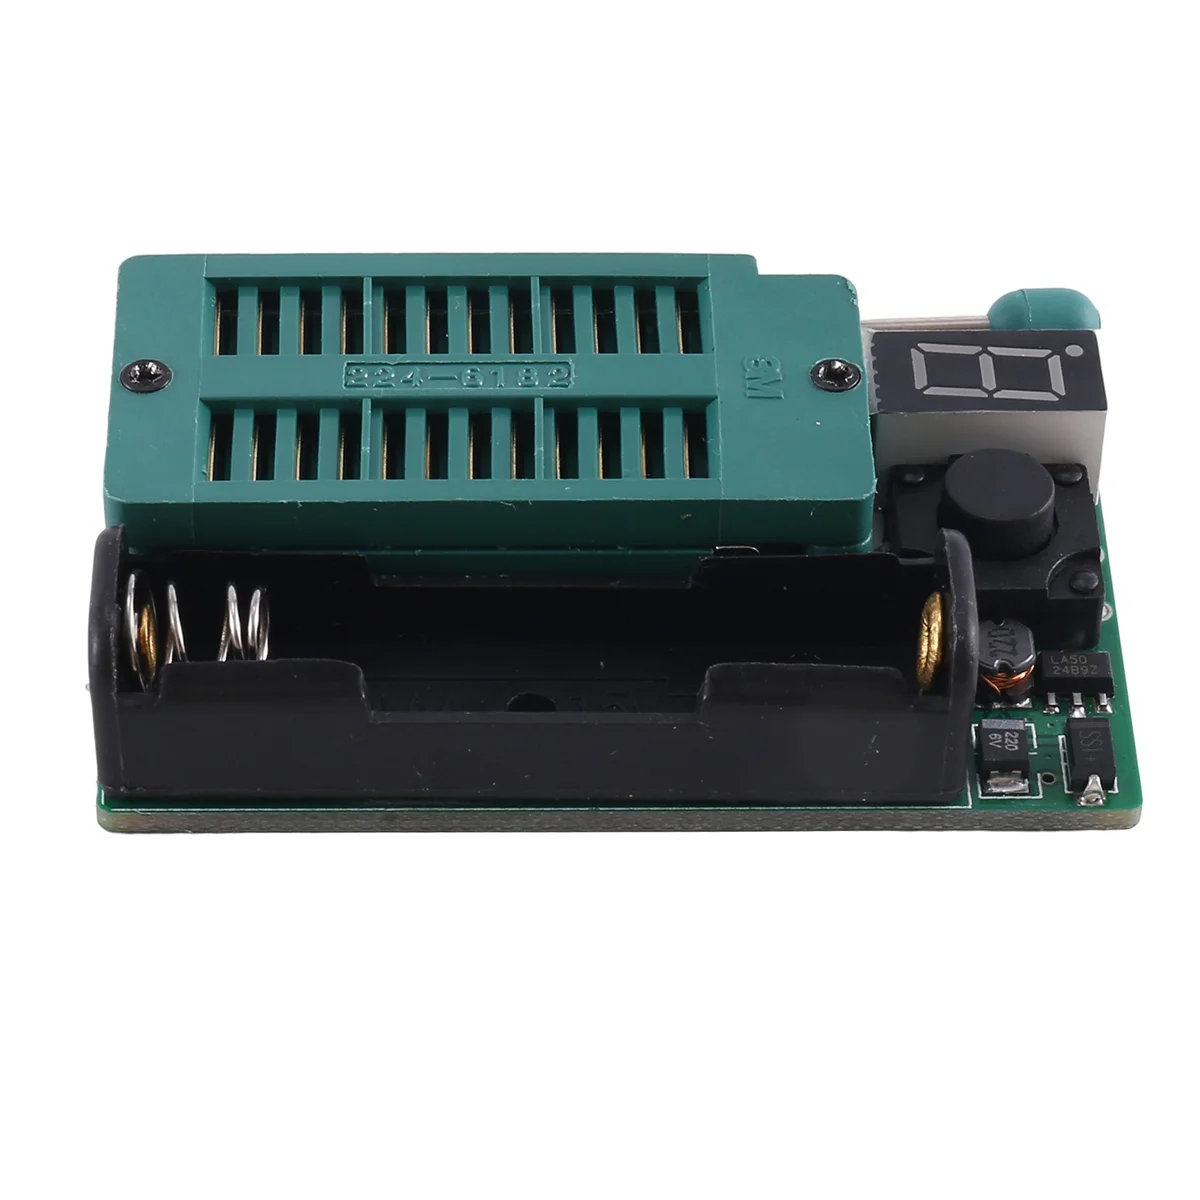 

IC & LED Tester Optocoupler LM399 DIP CHIP TESTER Model Number Detector Digital Integrated Circuit Tester KT152(B)